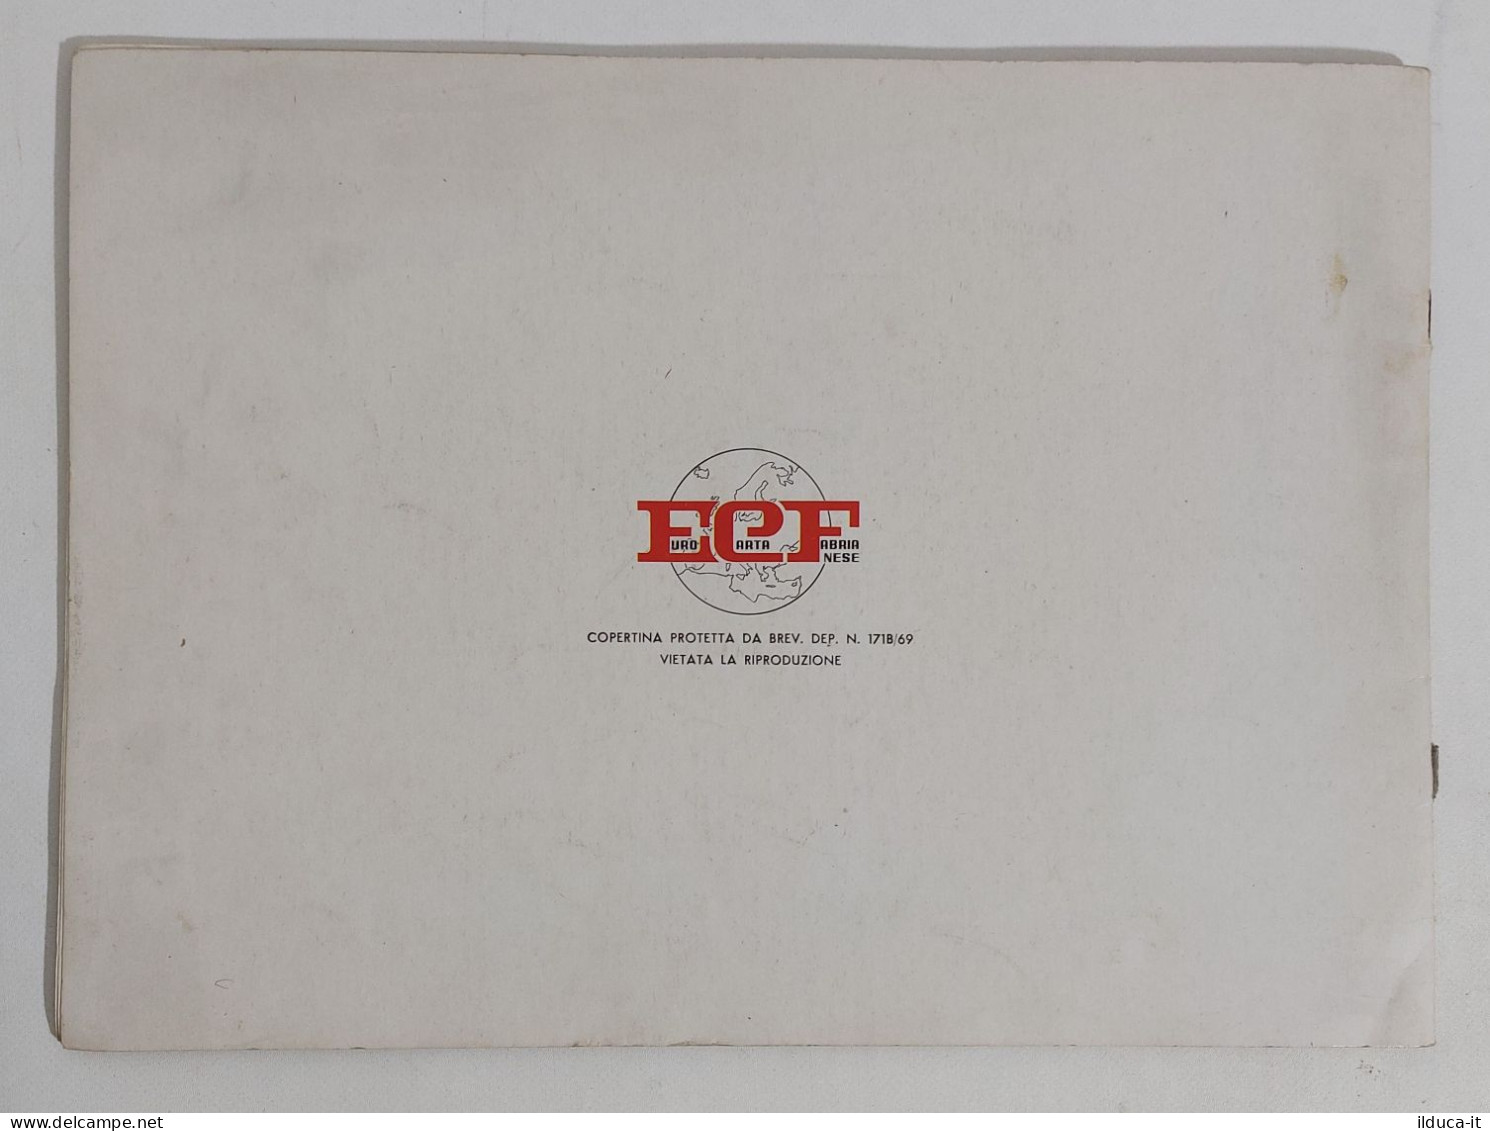 69805 Album Da Disegno Geometrico Vintage Arcobaleno - ECF - Materiaal En Toebehoren